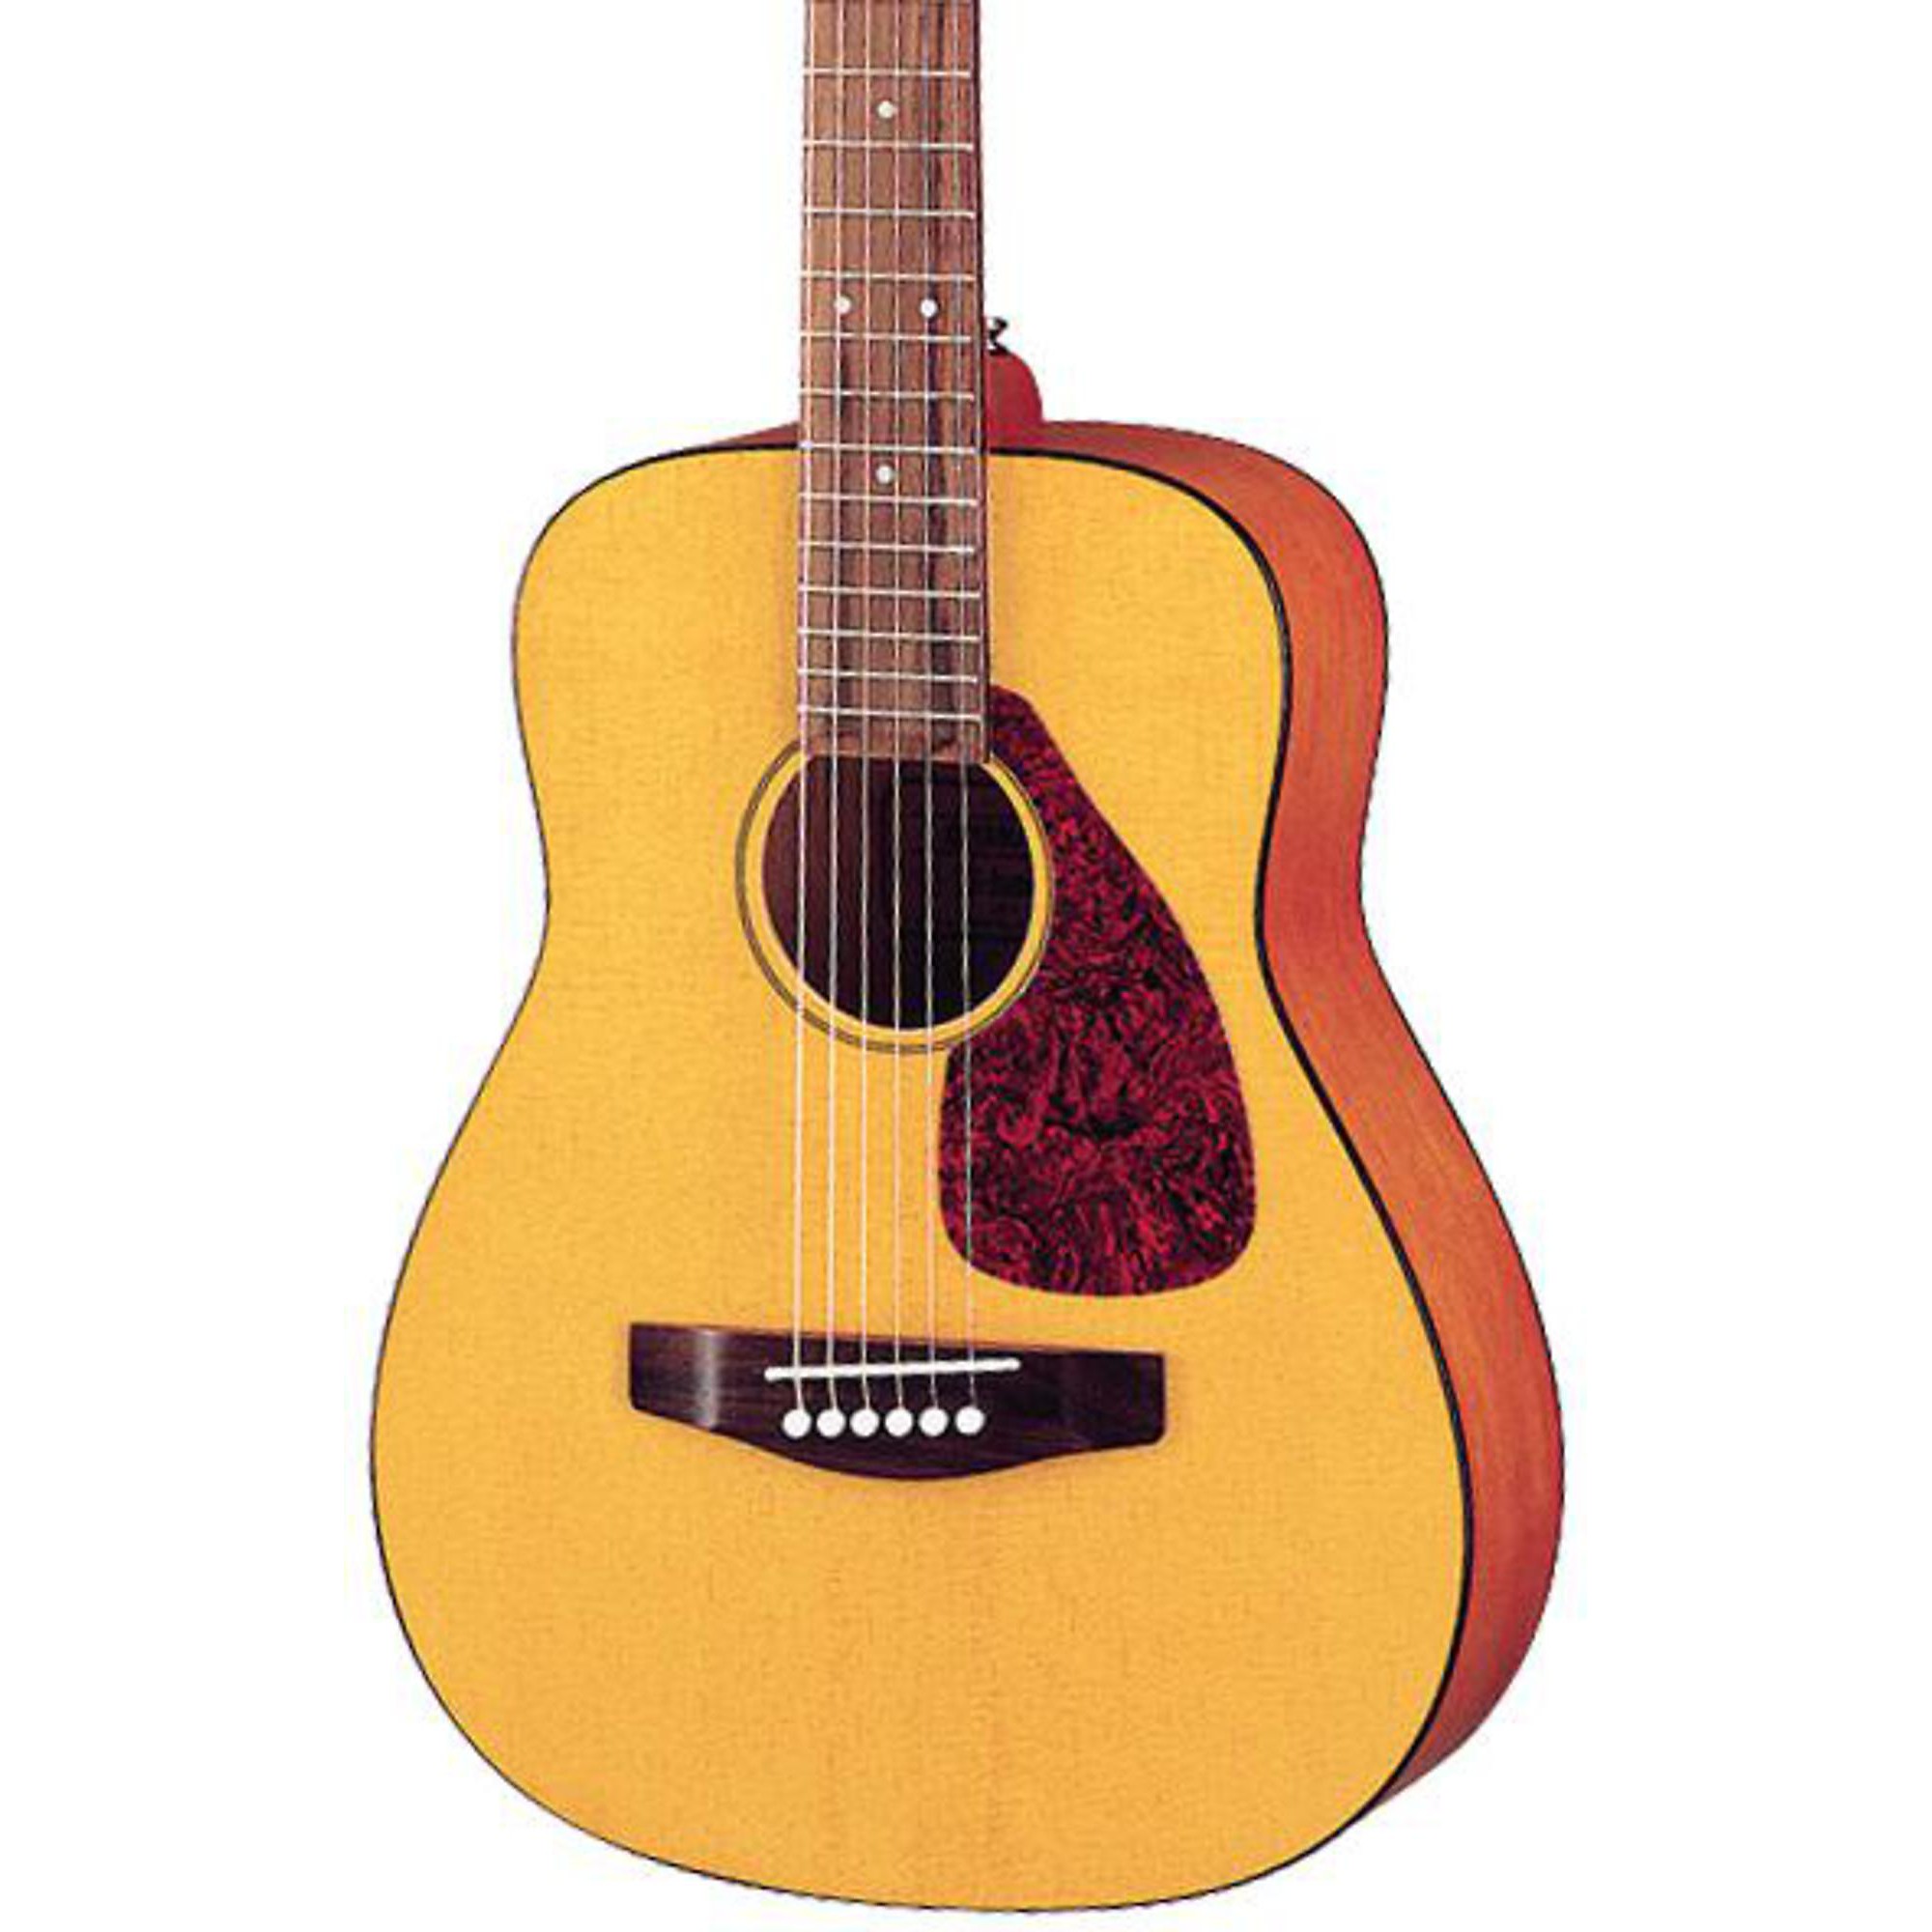 Мини-фолк-гитара Yamaha JR1 цена и фото